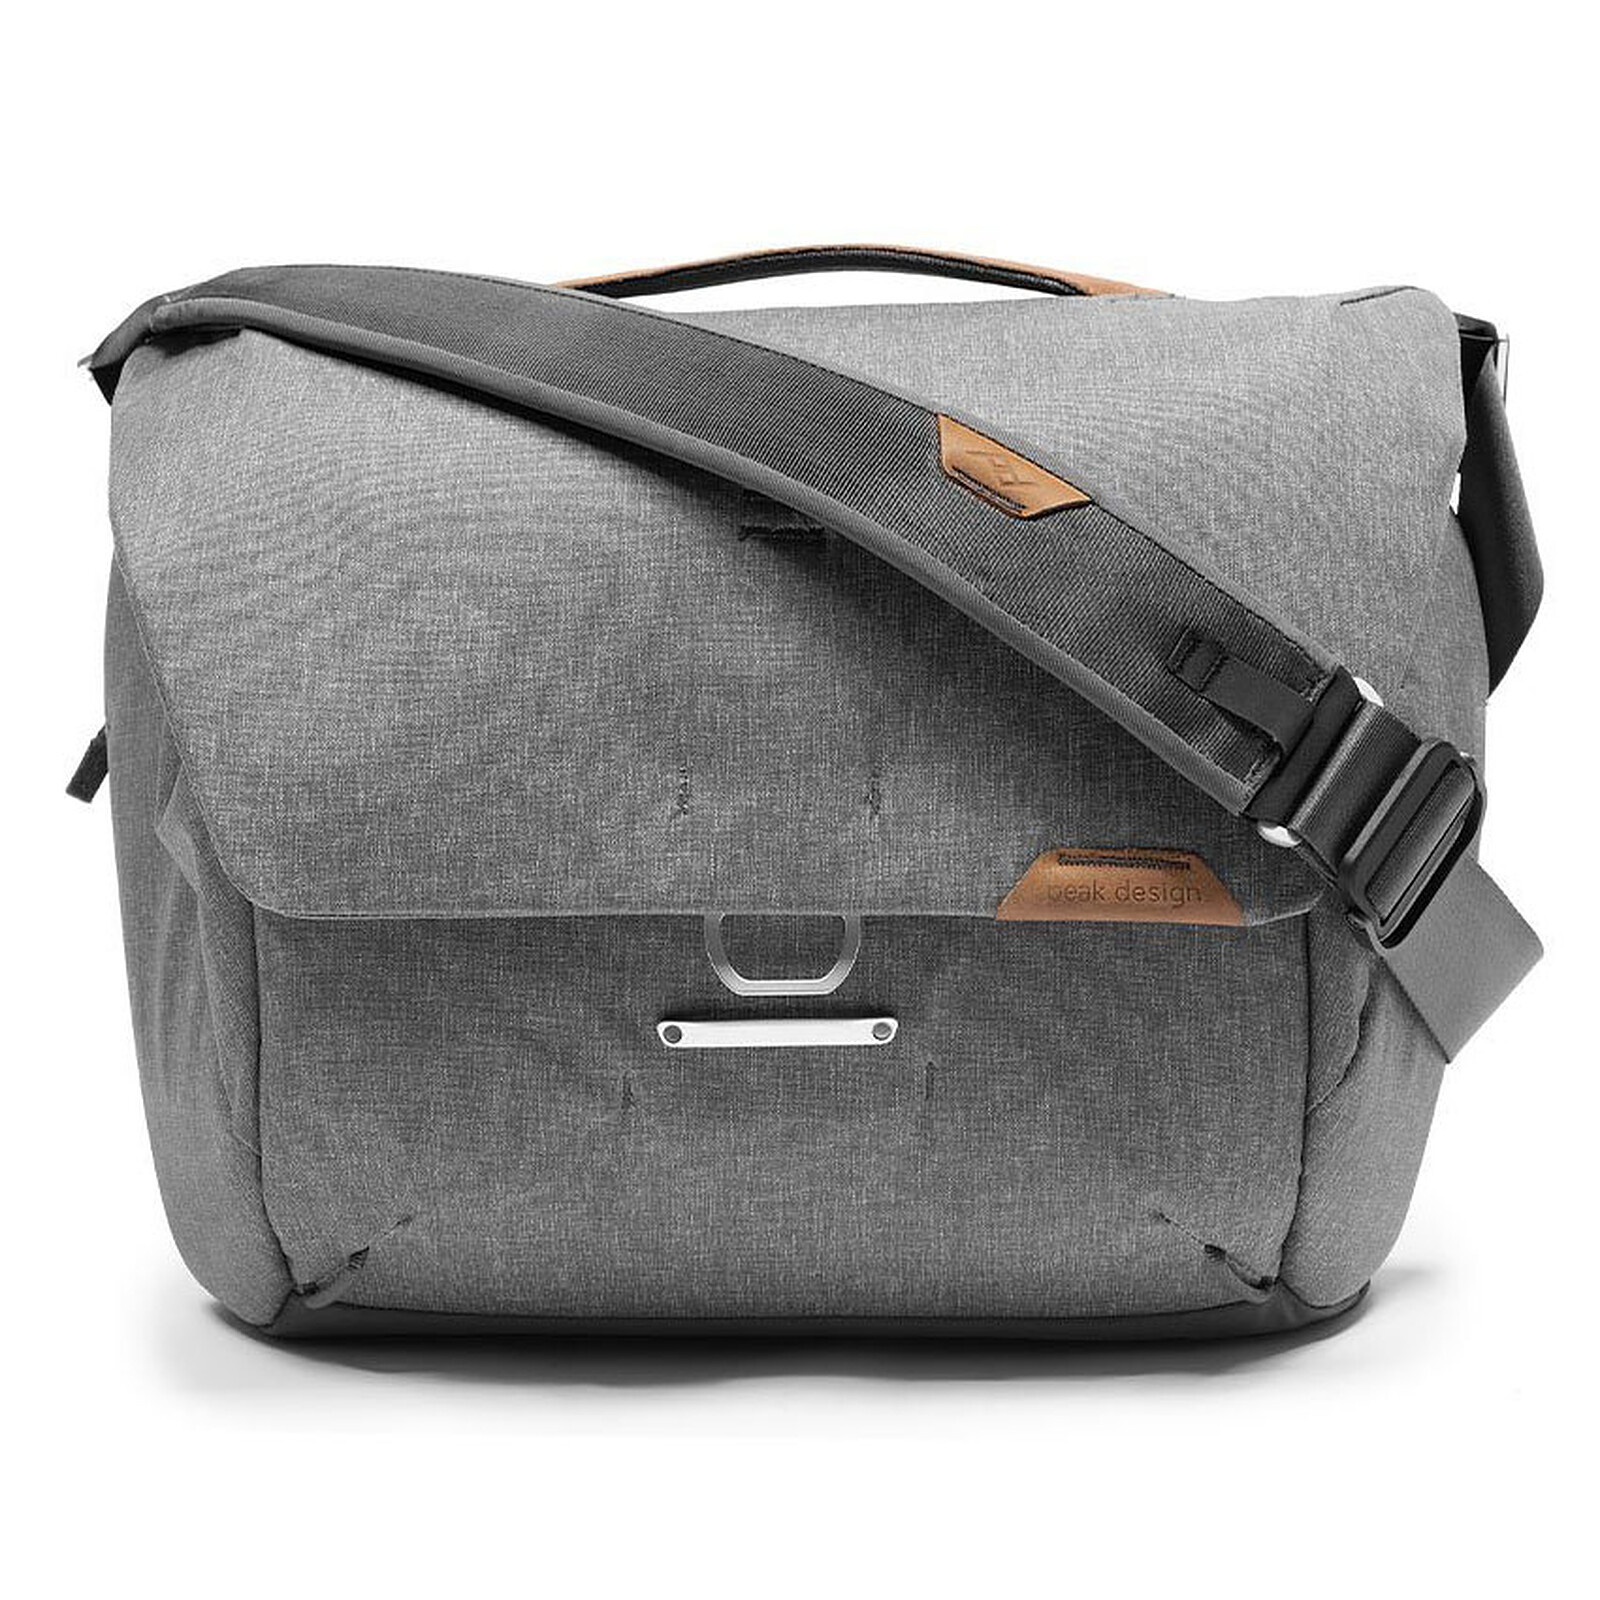 Peak Design Everyday Messenger V2 Grey - Camera bag & case - LDLC 3 ...